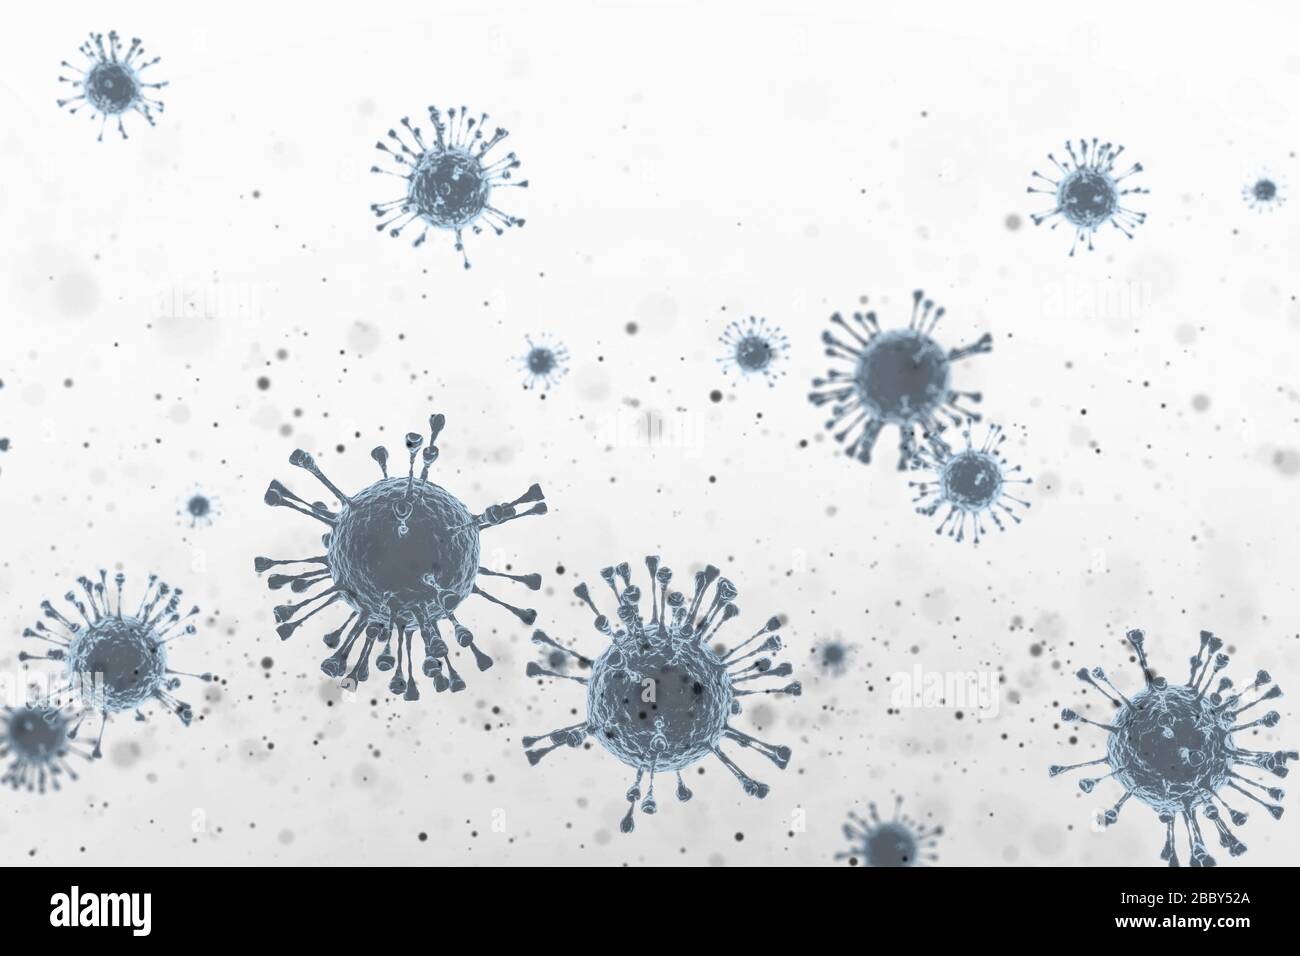 Bactéries germinales sales espace Covid SRAS Mers danger virus droplet 3DIllustration concept pour le fond. Banque D'Images